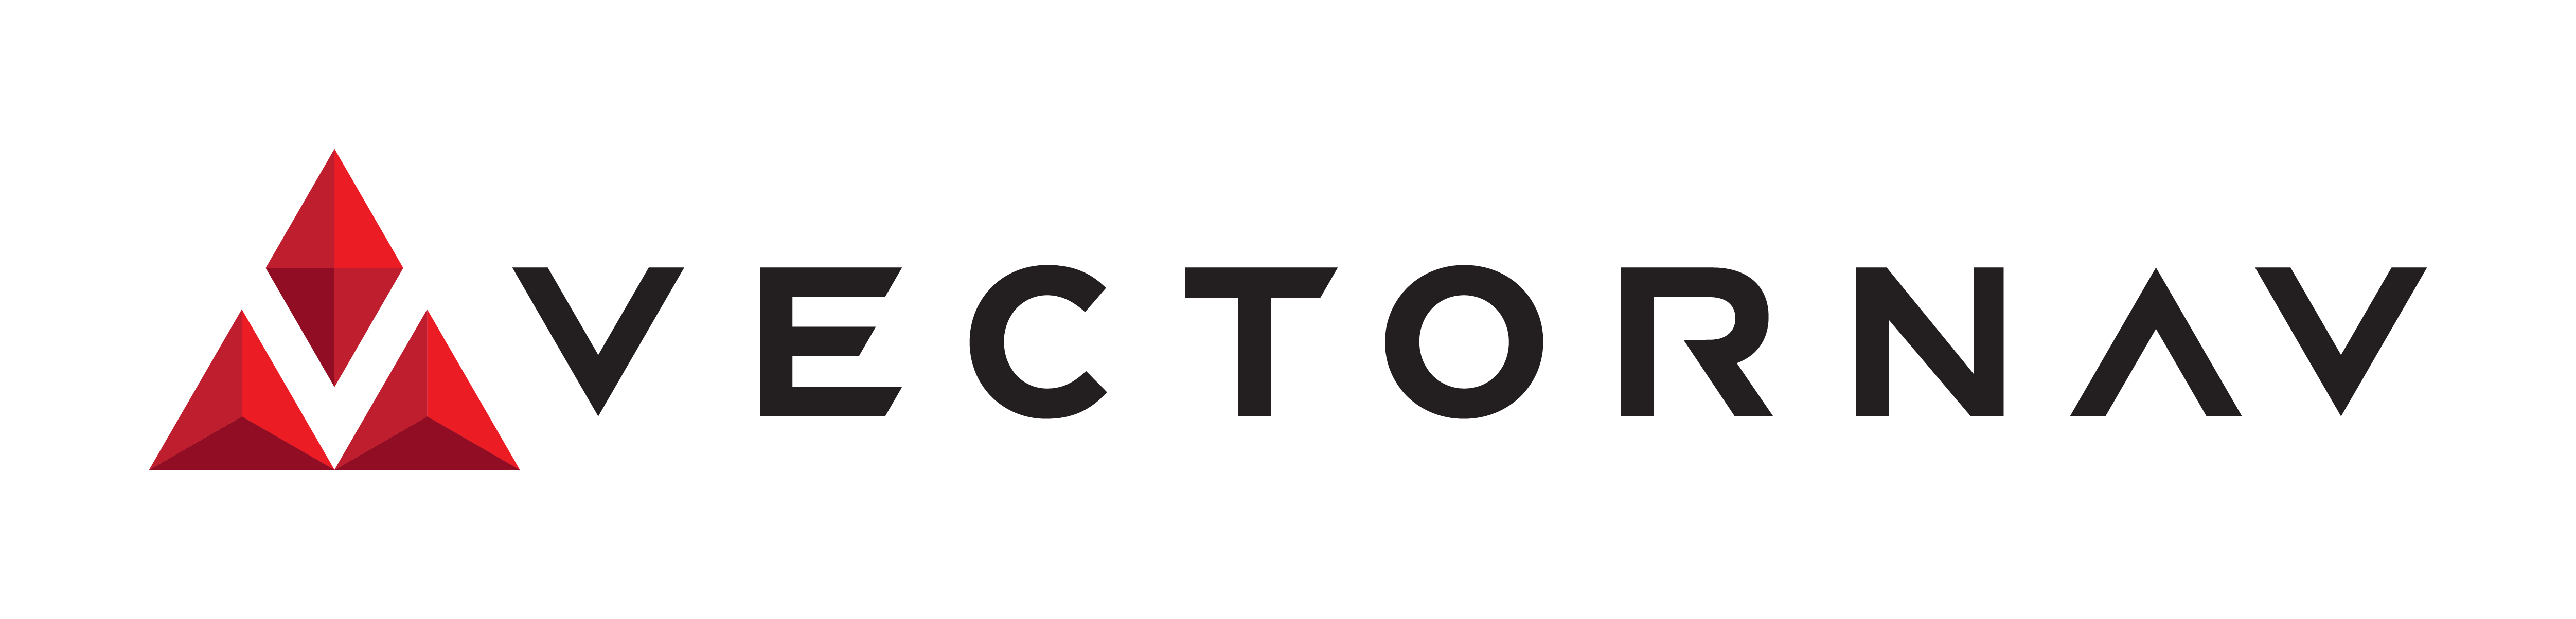 Vectornav logo